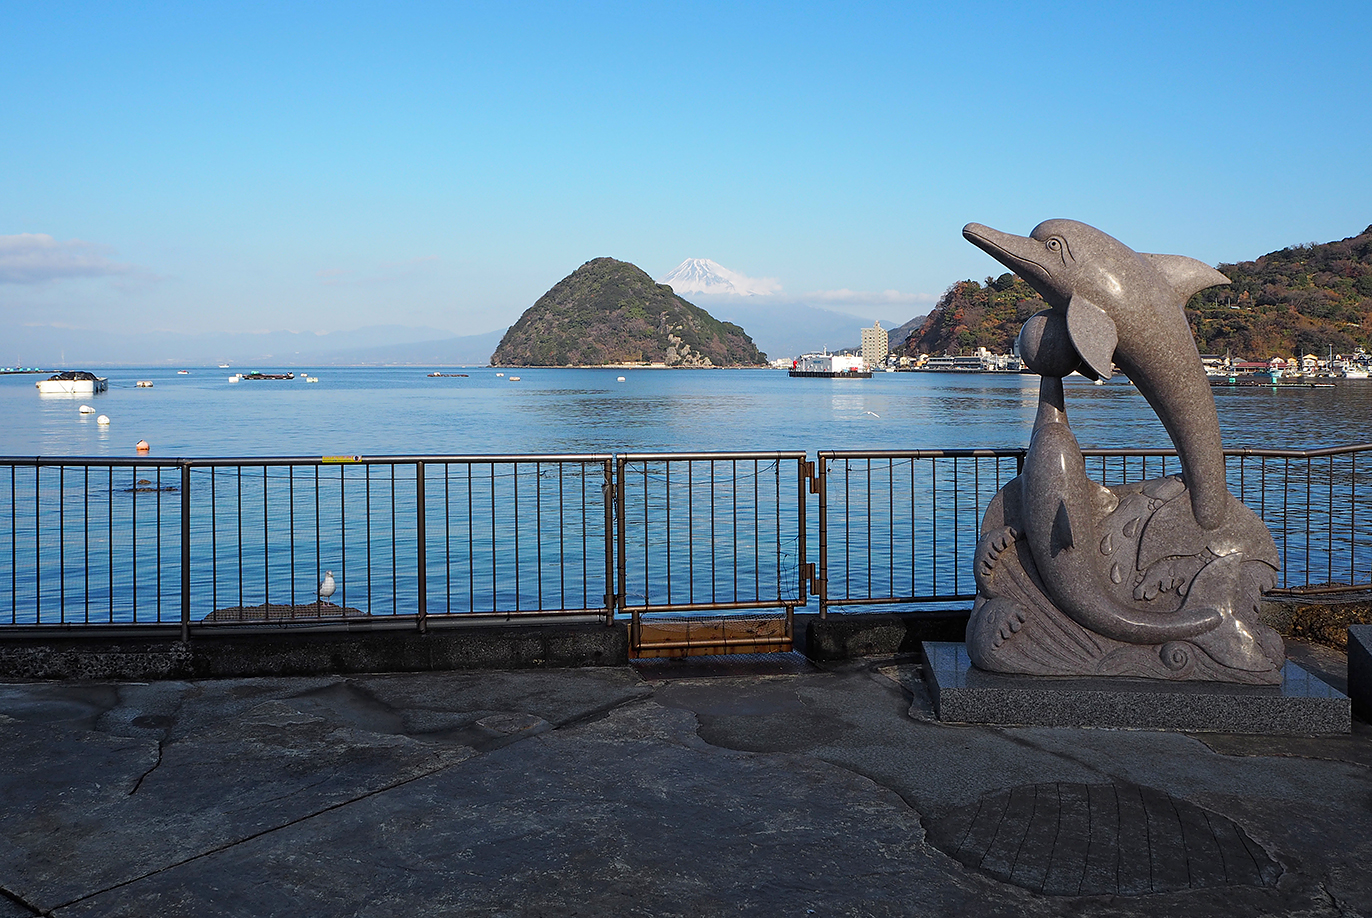 ショーが人気の歴史ある水族館「伊豆・三津シーパラダイス」